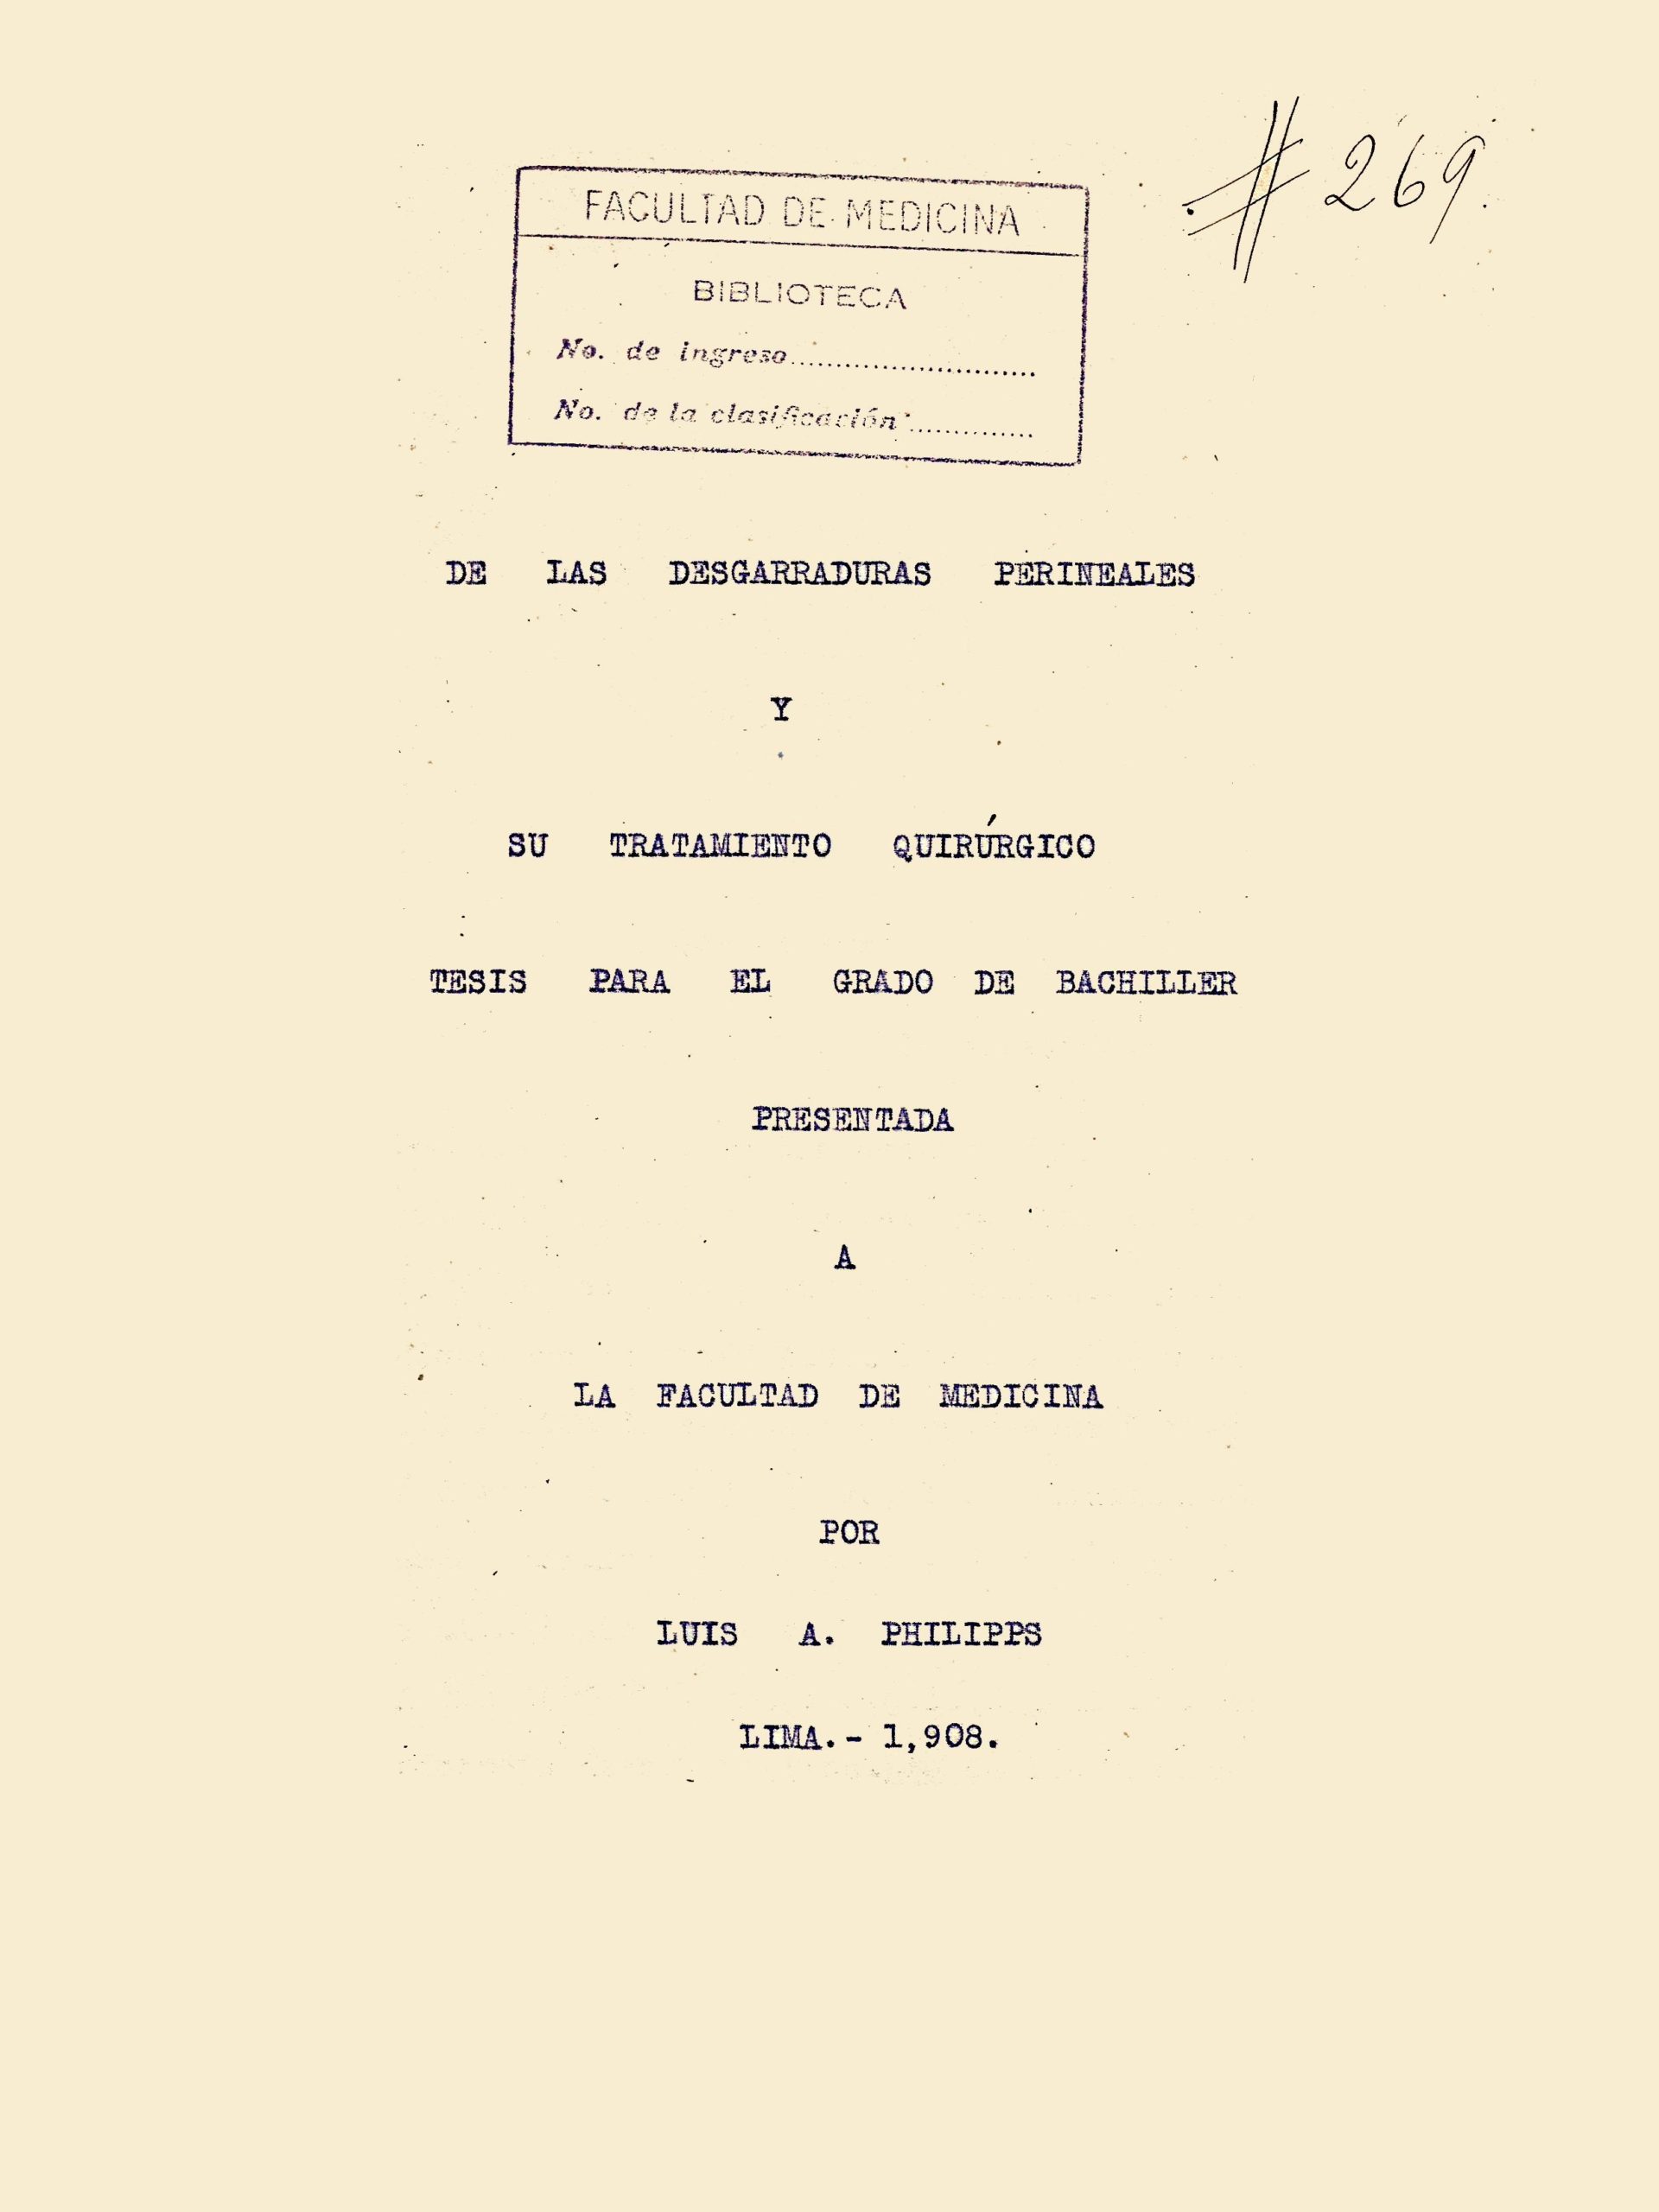 De las desgarraduras perineales y su tratamiento_Luis Philipps_1908